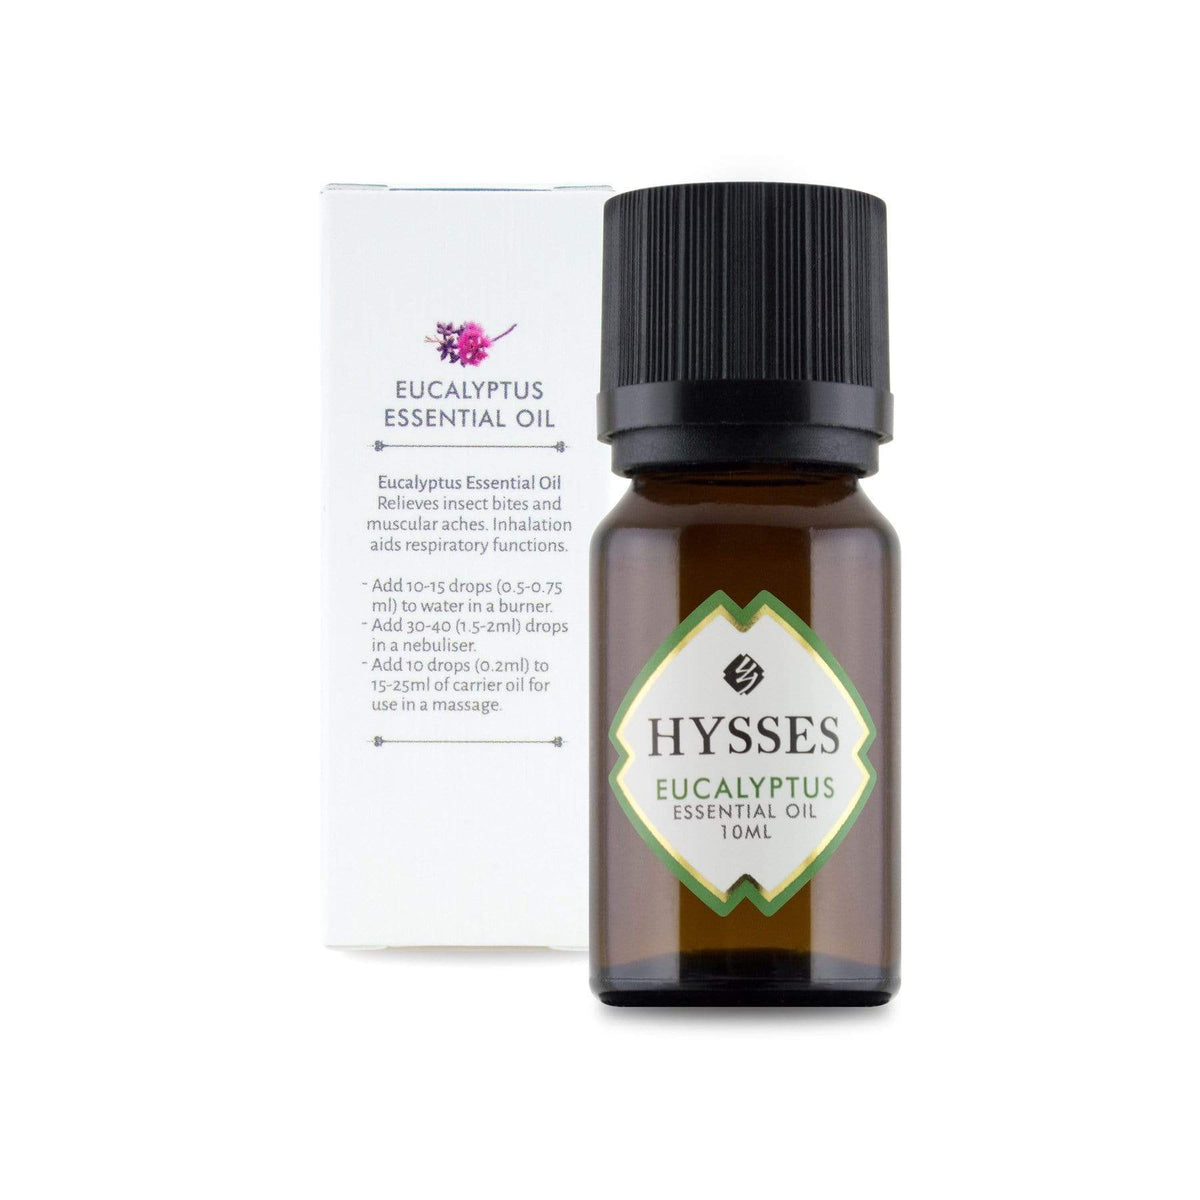 Hysses Essential Oil Essential Oil Eucalyptus